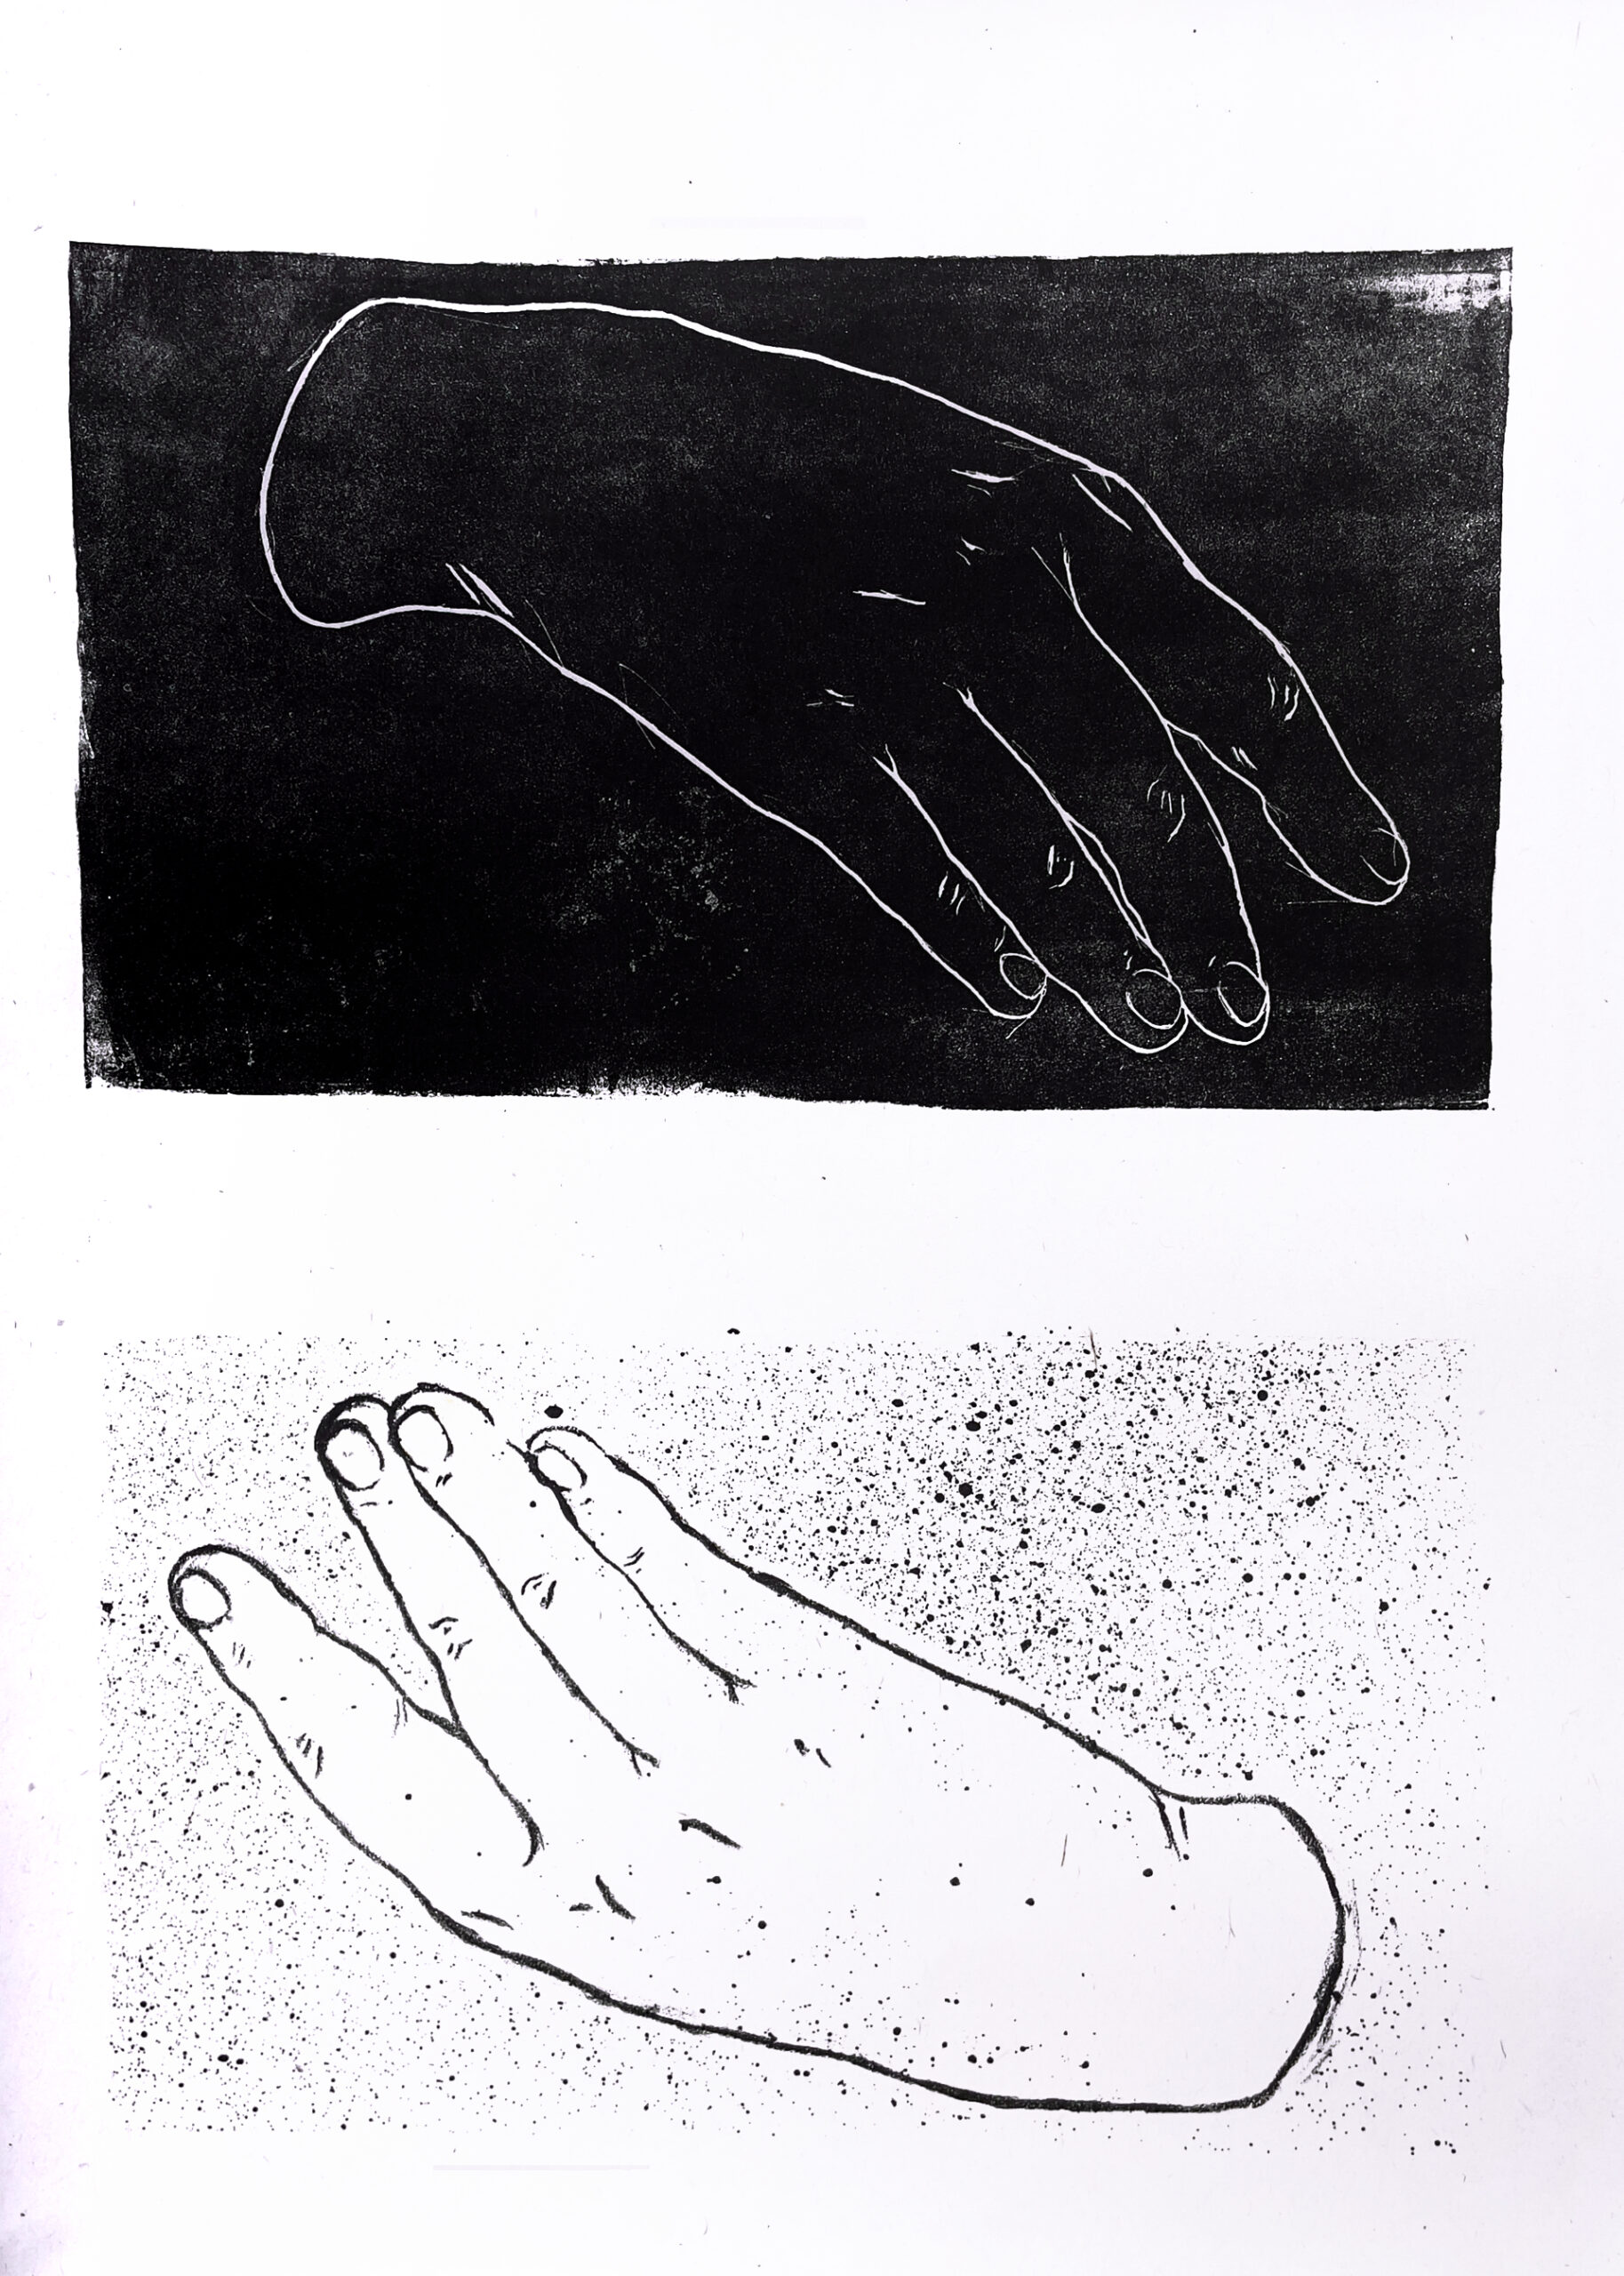 Praca przedstawia dwa linearne rysunki tej samej dłoni, jedna wykonana w pozytywie, druga w lustrzanym odbiciu  wykonana jest w negatywie